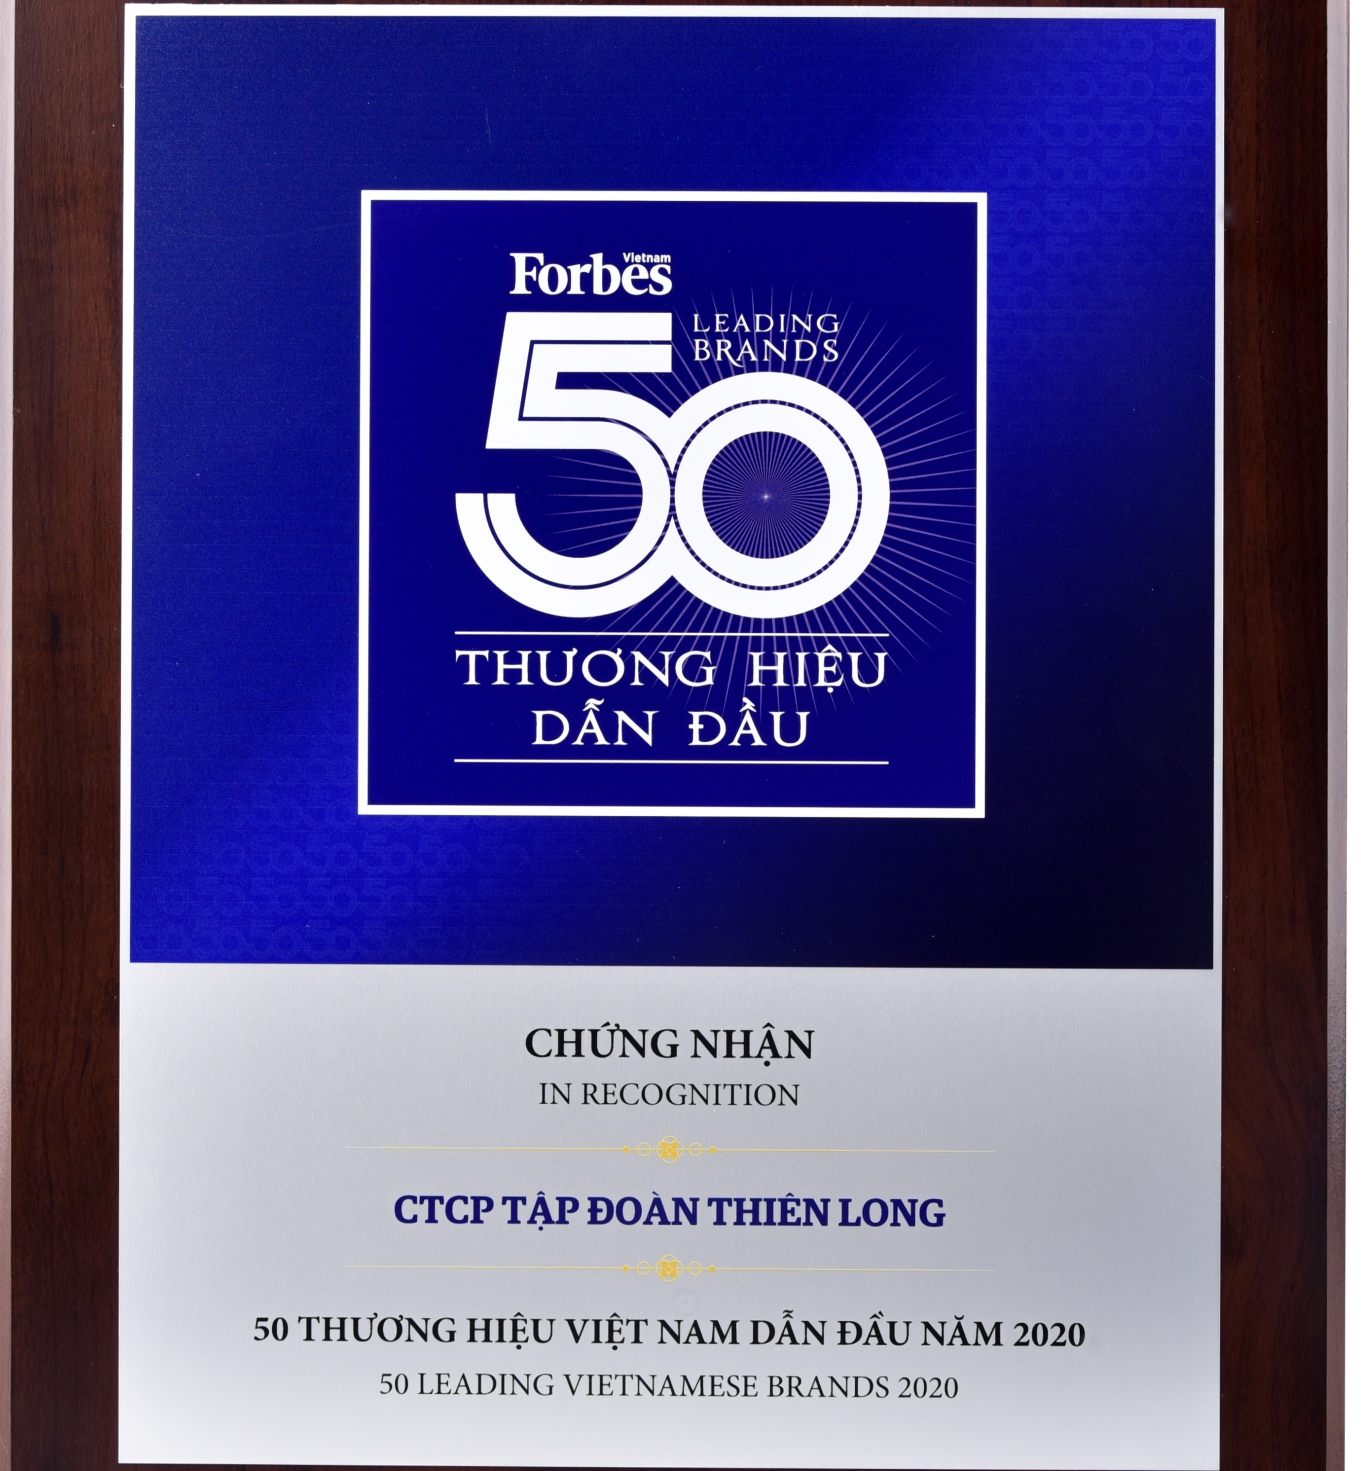 thien long group enters top 50 brands vietnam and asias 200 best under a billion list